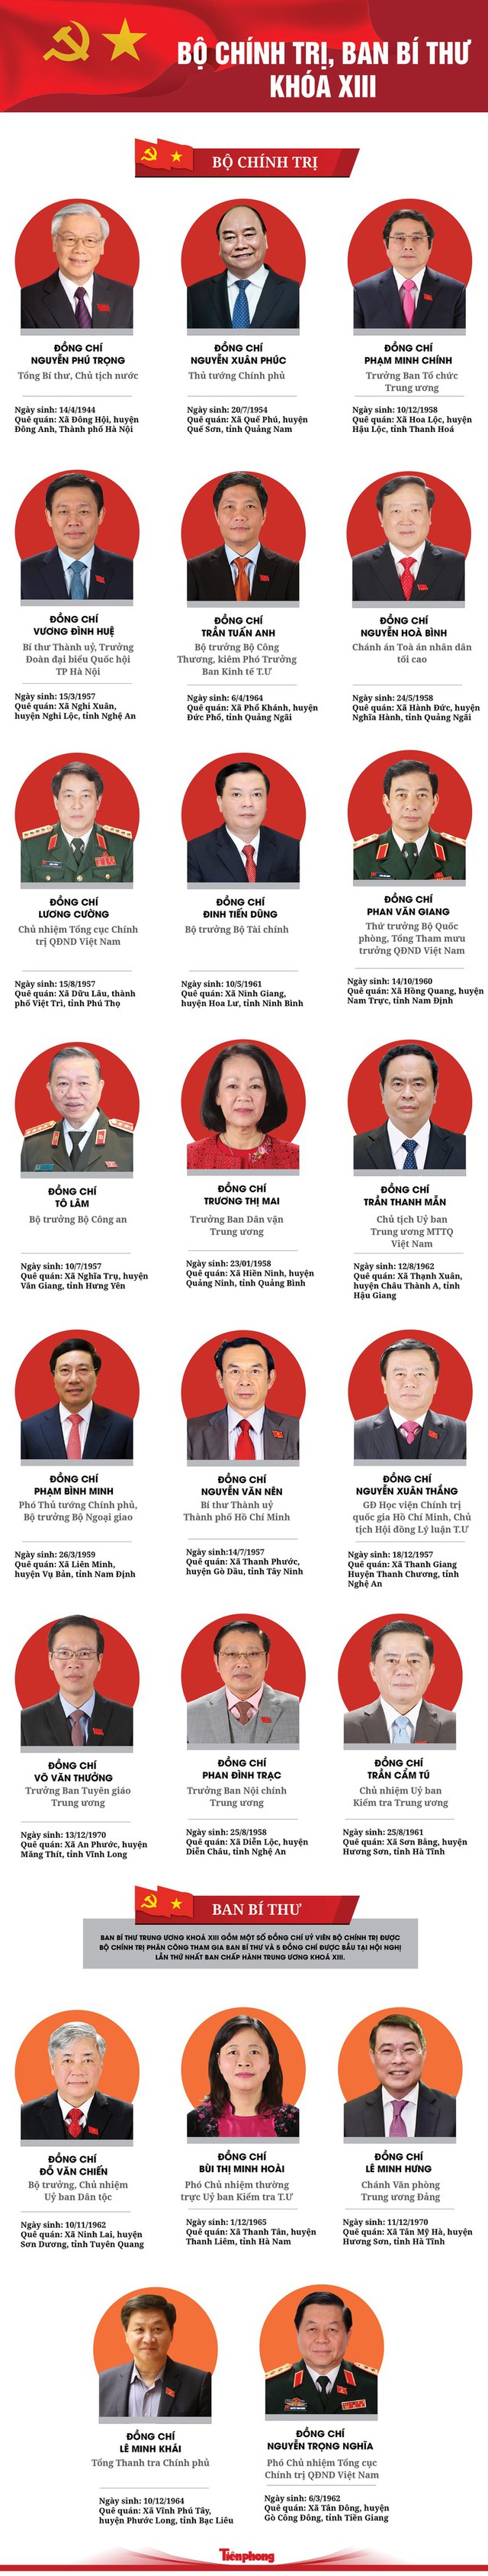 Chi tiết danh sách các Ủy viên Bộ Chính trị, Ban Bí thư khóa XIII - Ảnh 1.